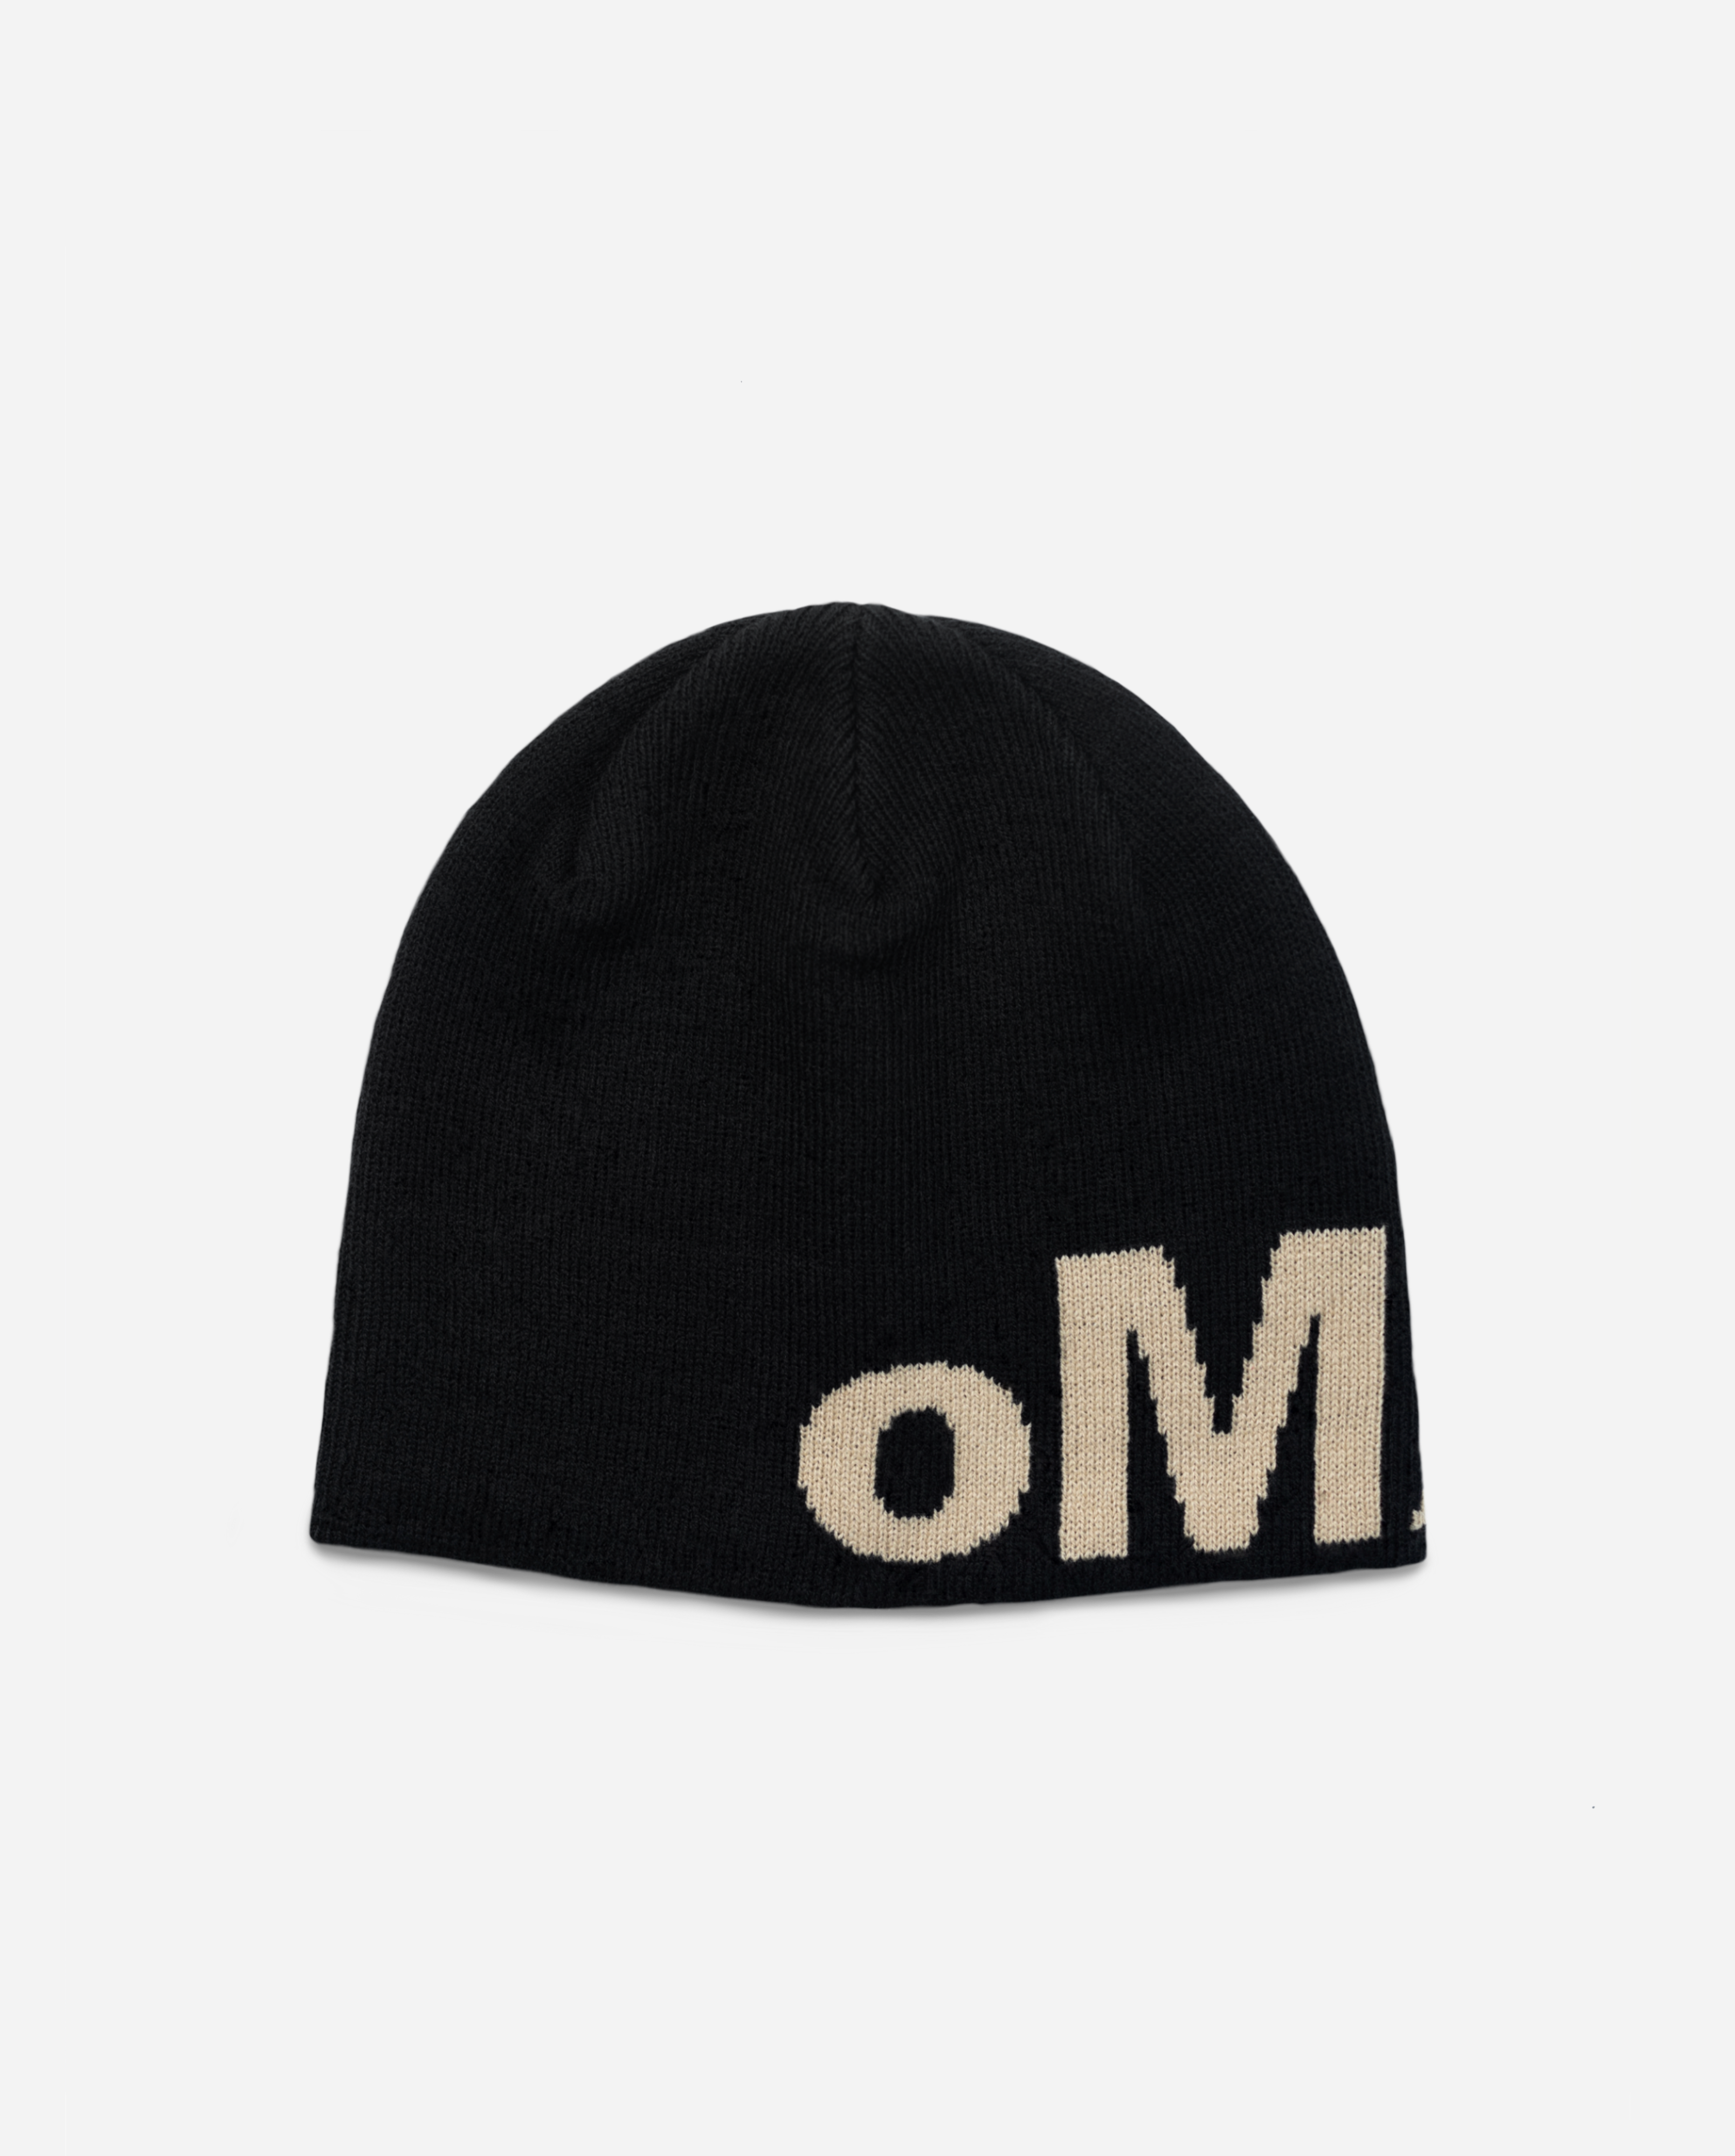 oMA OG LOGO SKULL CAP (BLACK/CREAM)